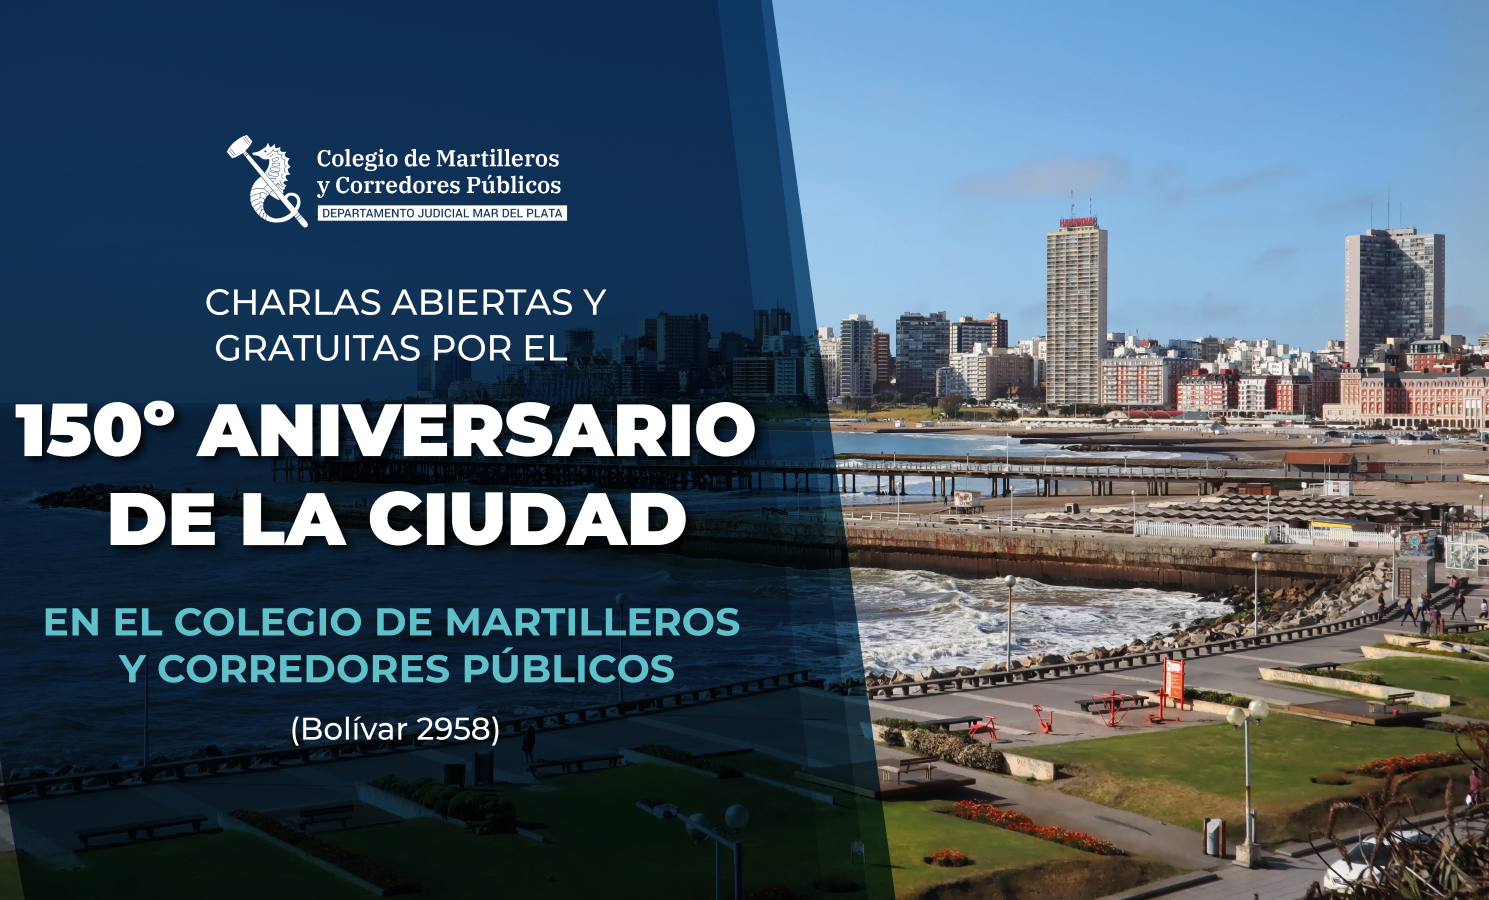 Charlas Abiertas y Gratuitas por el 150º Aniversario de la ciudad en el Colegio De Martilleros Y Corredores Públicos